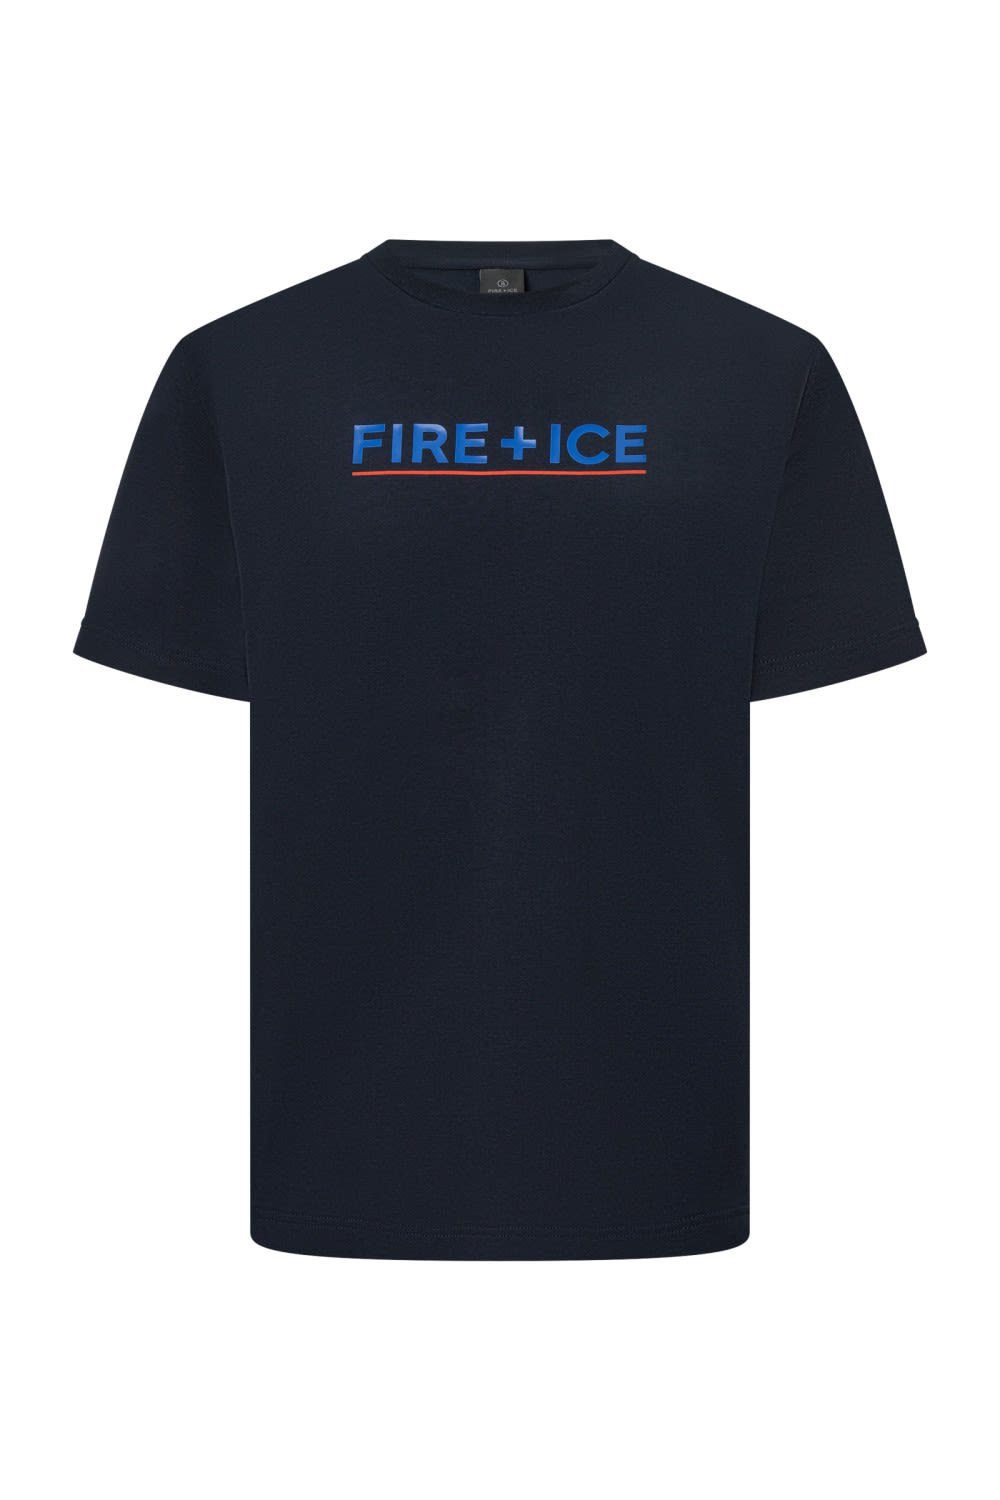 Ice Bogner Herren Kurzarm-Shirt Ice Navy T-Shirt Fire Mens Fire + Deepest Matteo + Bogner